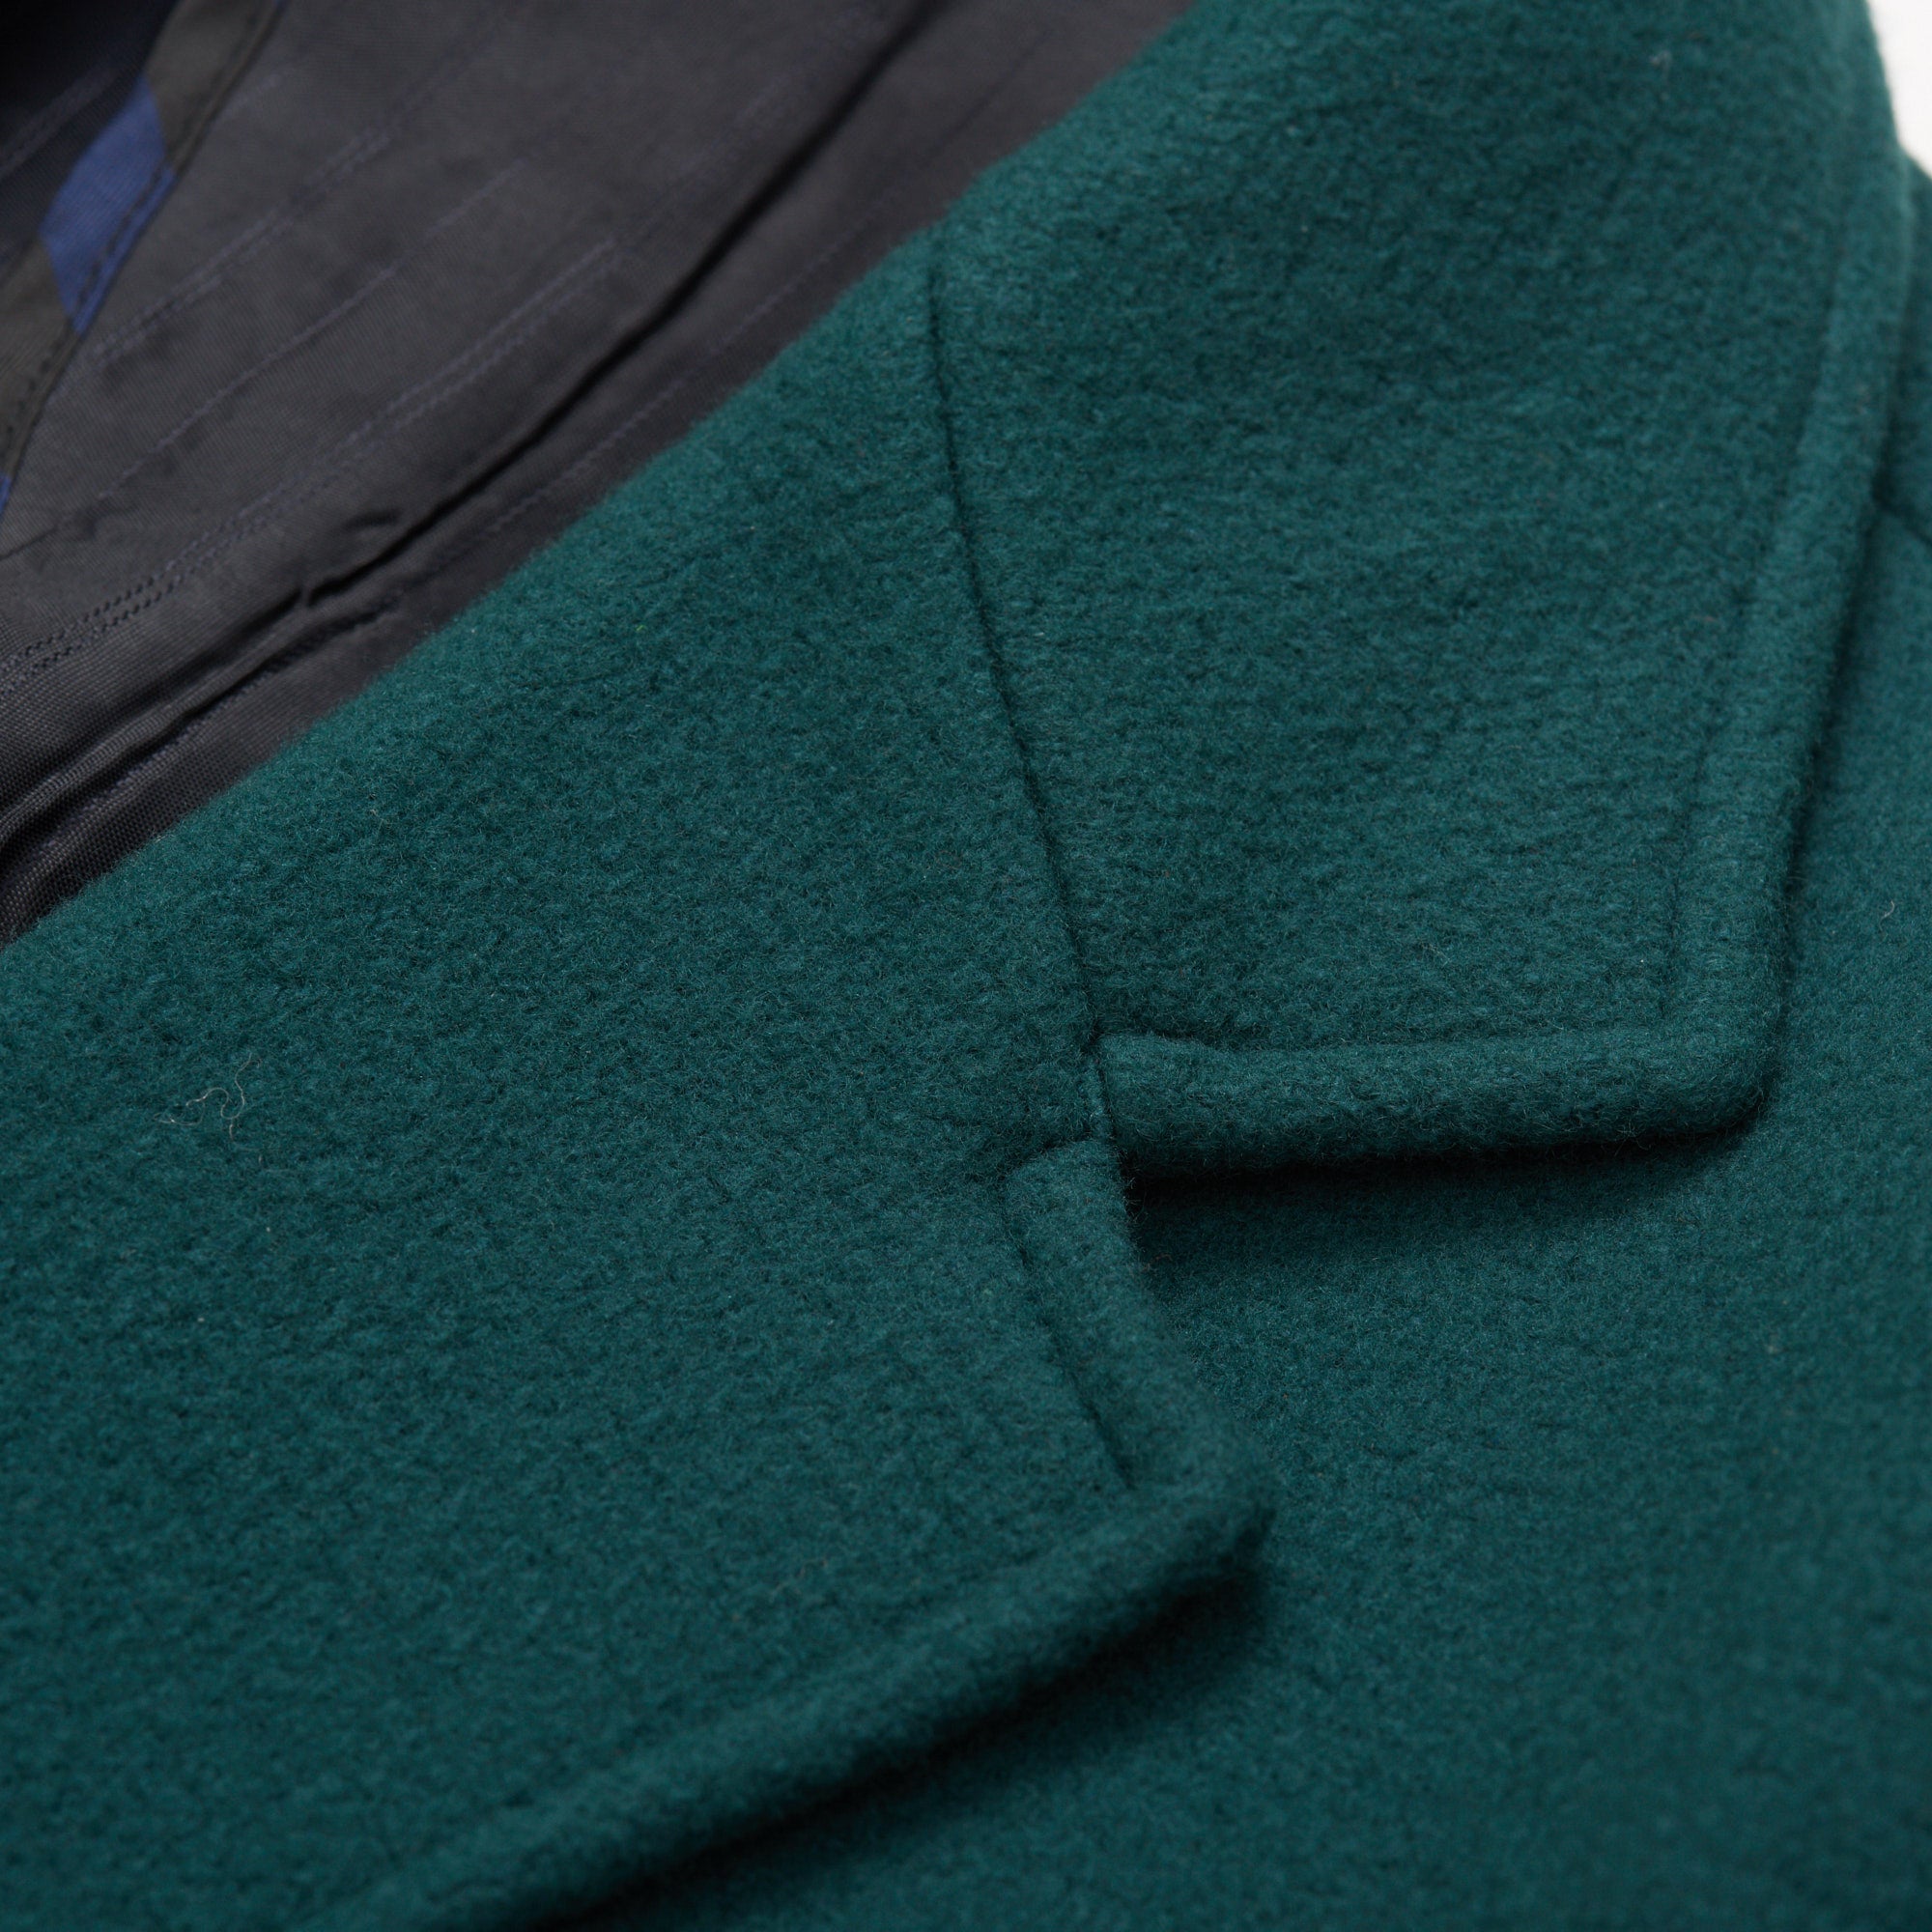 VINCENZO PALUMBO Napoli Green Wool Blend Jacket Coat NEW VINCENZO PALUMBO